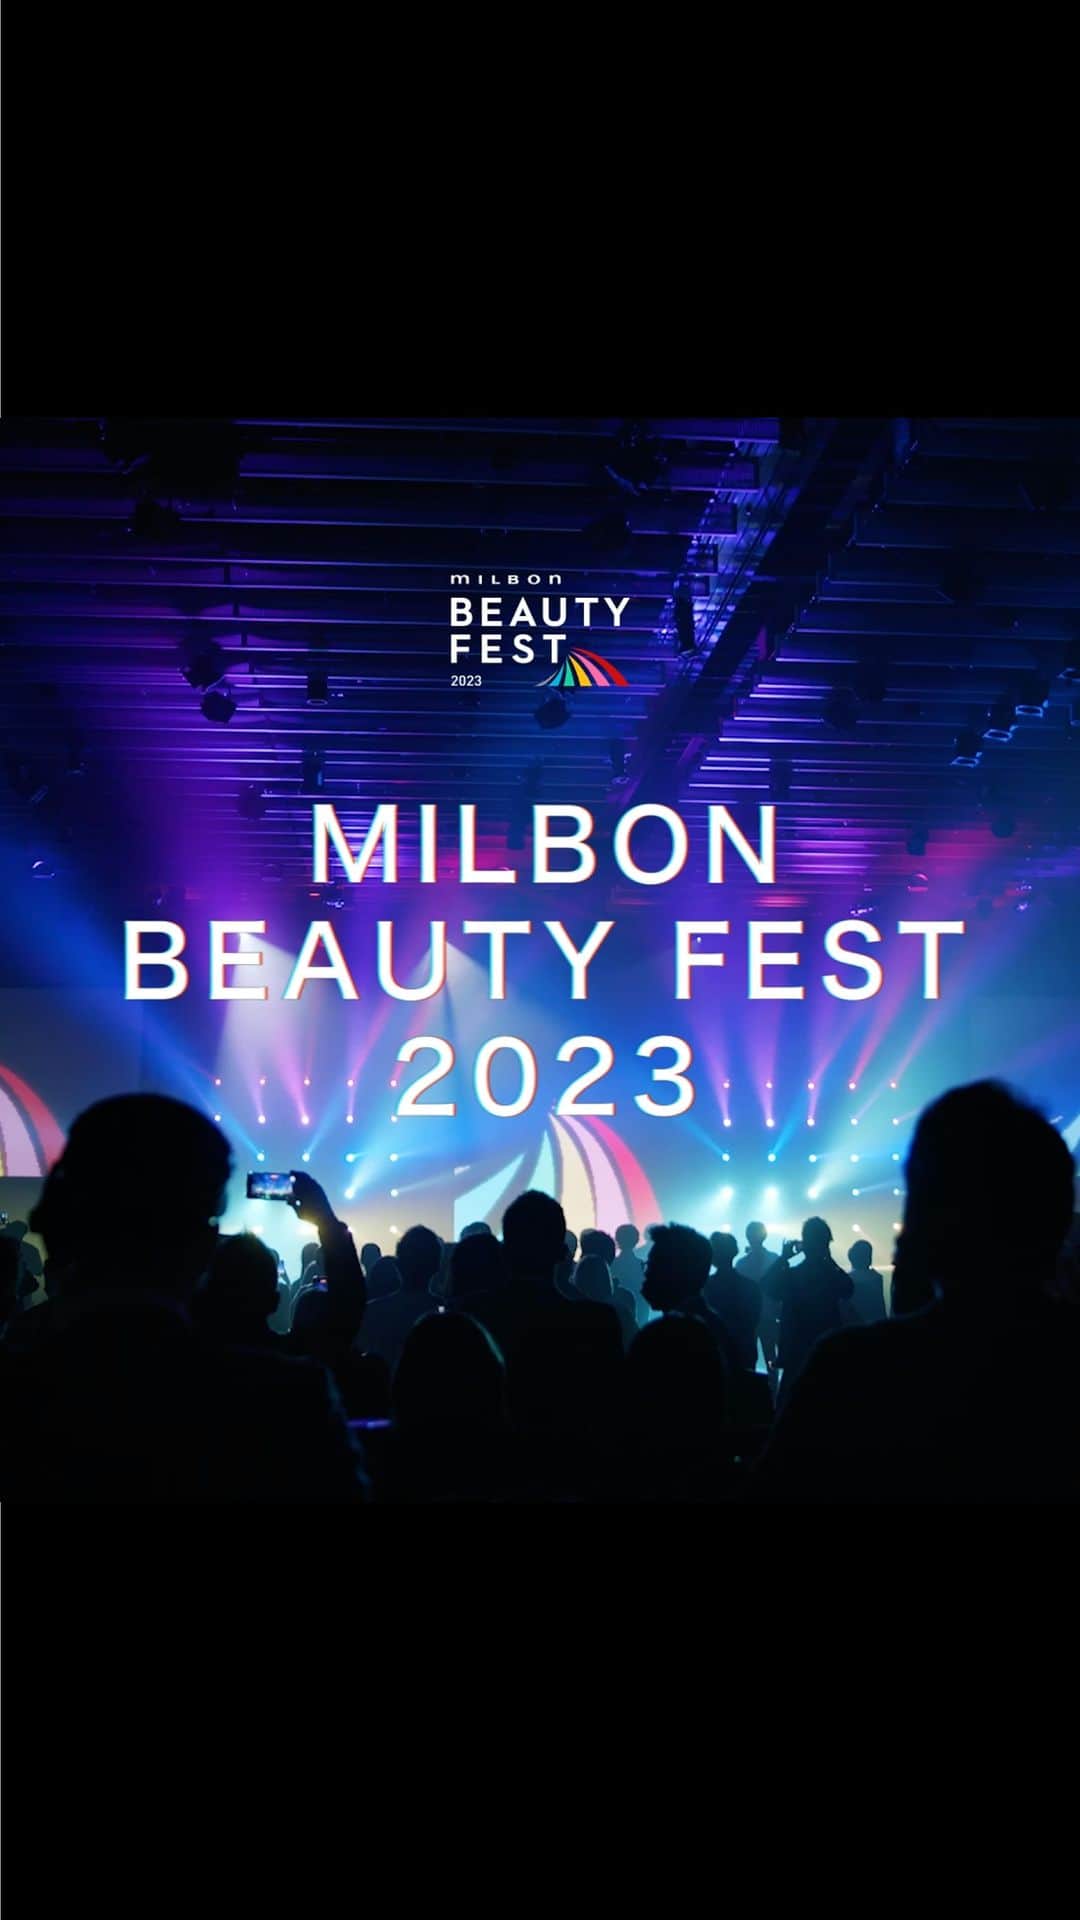 ミルボン Milbon for designer japanのインスタグラム：「⁡ ⁡ MILBON BEAUTY FEST 2023 Vimeoでライブ配信します！   様々なキャリア・分野のプロフェッショナルによる成果発表を通じて、目指す美容師像を見つける『美容の祭典』 ミルボン ビューティフェス。   4つのDA、KAのエリアステージを勝ち抜いたファイナリストによる決勝および表彰式、ビューティソムリエ認定者の取り組み成果発表をライブ配信。   ■配信日時 11/14(火) ⁡ 11:50　ライブ配信スタート 12:00　OPENING 12:15　DA-NEXT- 競技スタート 12:25　DA-PRO- 競技スタート 14:10　KA ファイナルステージ スタート 15:30　各イベントの表彰式スタート ※タイムスケジュールは予定ですので、変更になる場合がございます。     #milbon#ミルボン#milbonbeautyfest#ミルボンビューティフェス#コンテスト#フォトコンテスト#美容師#ファイナルステージ#milbonda#da#daad#dafit#danext#dapro#ka#美容知識王決定戦#ビュティソムリエ」